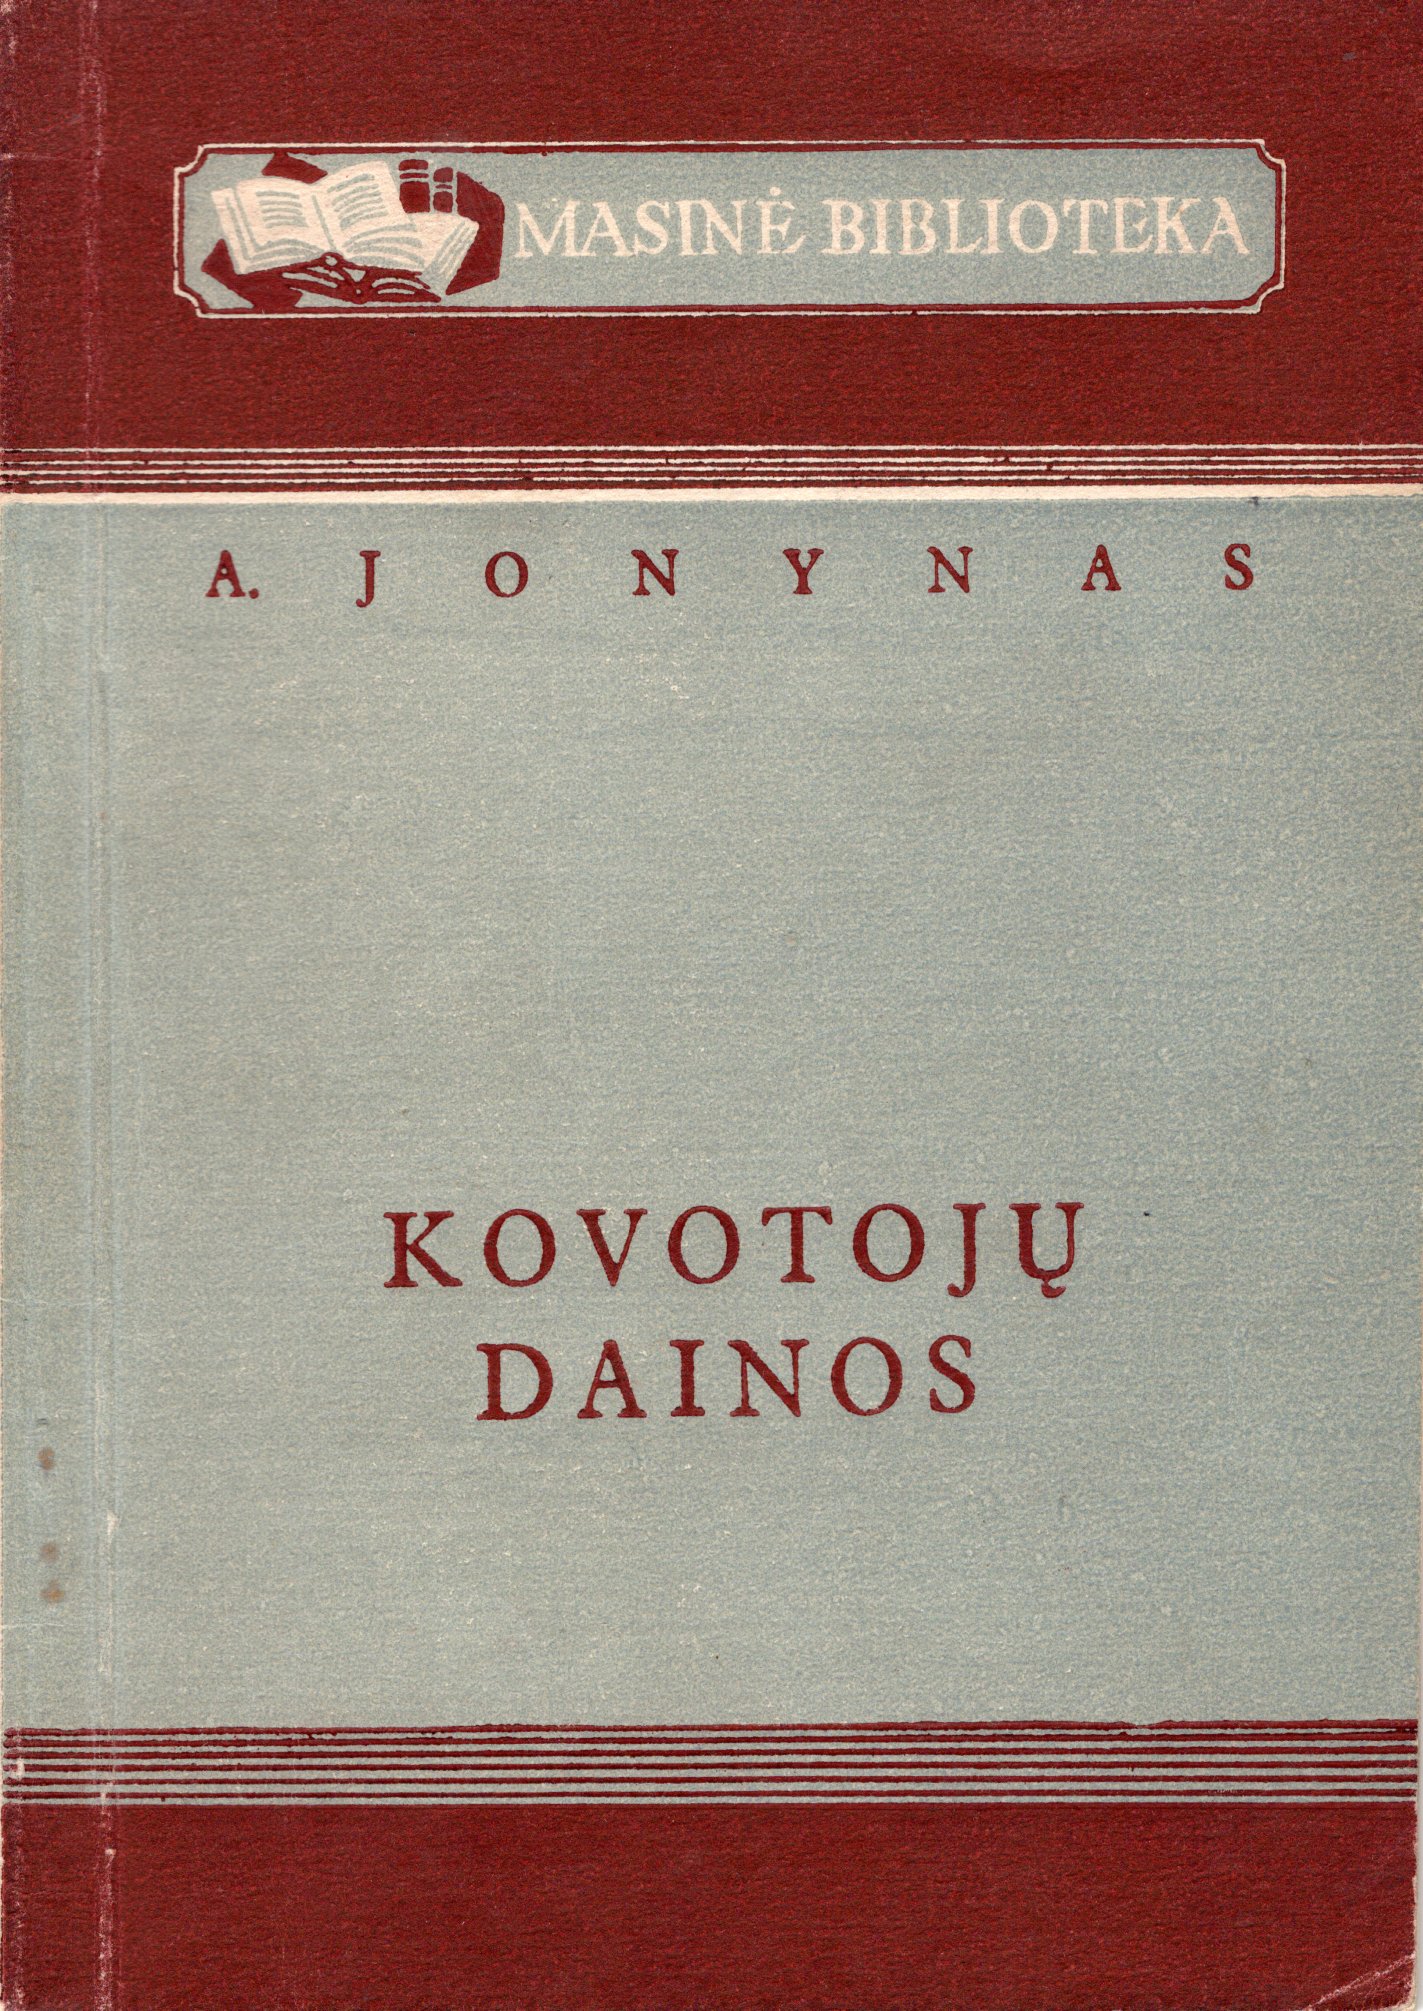 A. Jonyno pirmoji eilėraščių knyga. Vilnius. Valstybinė grožinės literatūros leidykla, 1949 m. MLLM GEK 17276